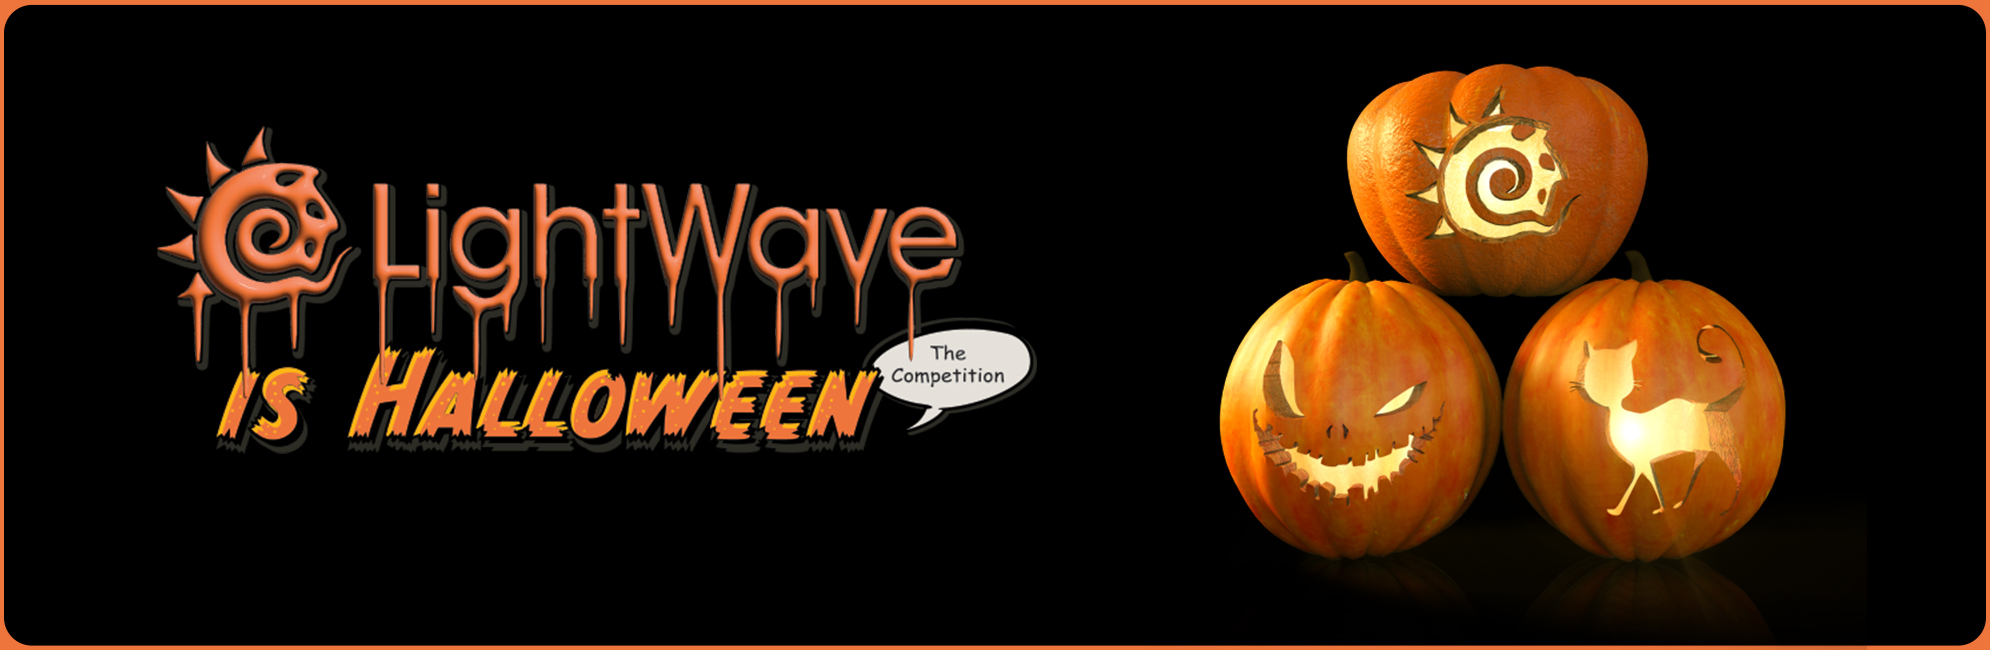 Nome: LightWave is Halloween  LightWave 3D Promo 20320918.jpg
Visite: 91
Dimensione: 387.4 KB